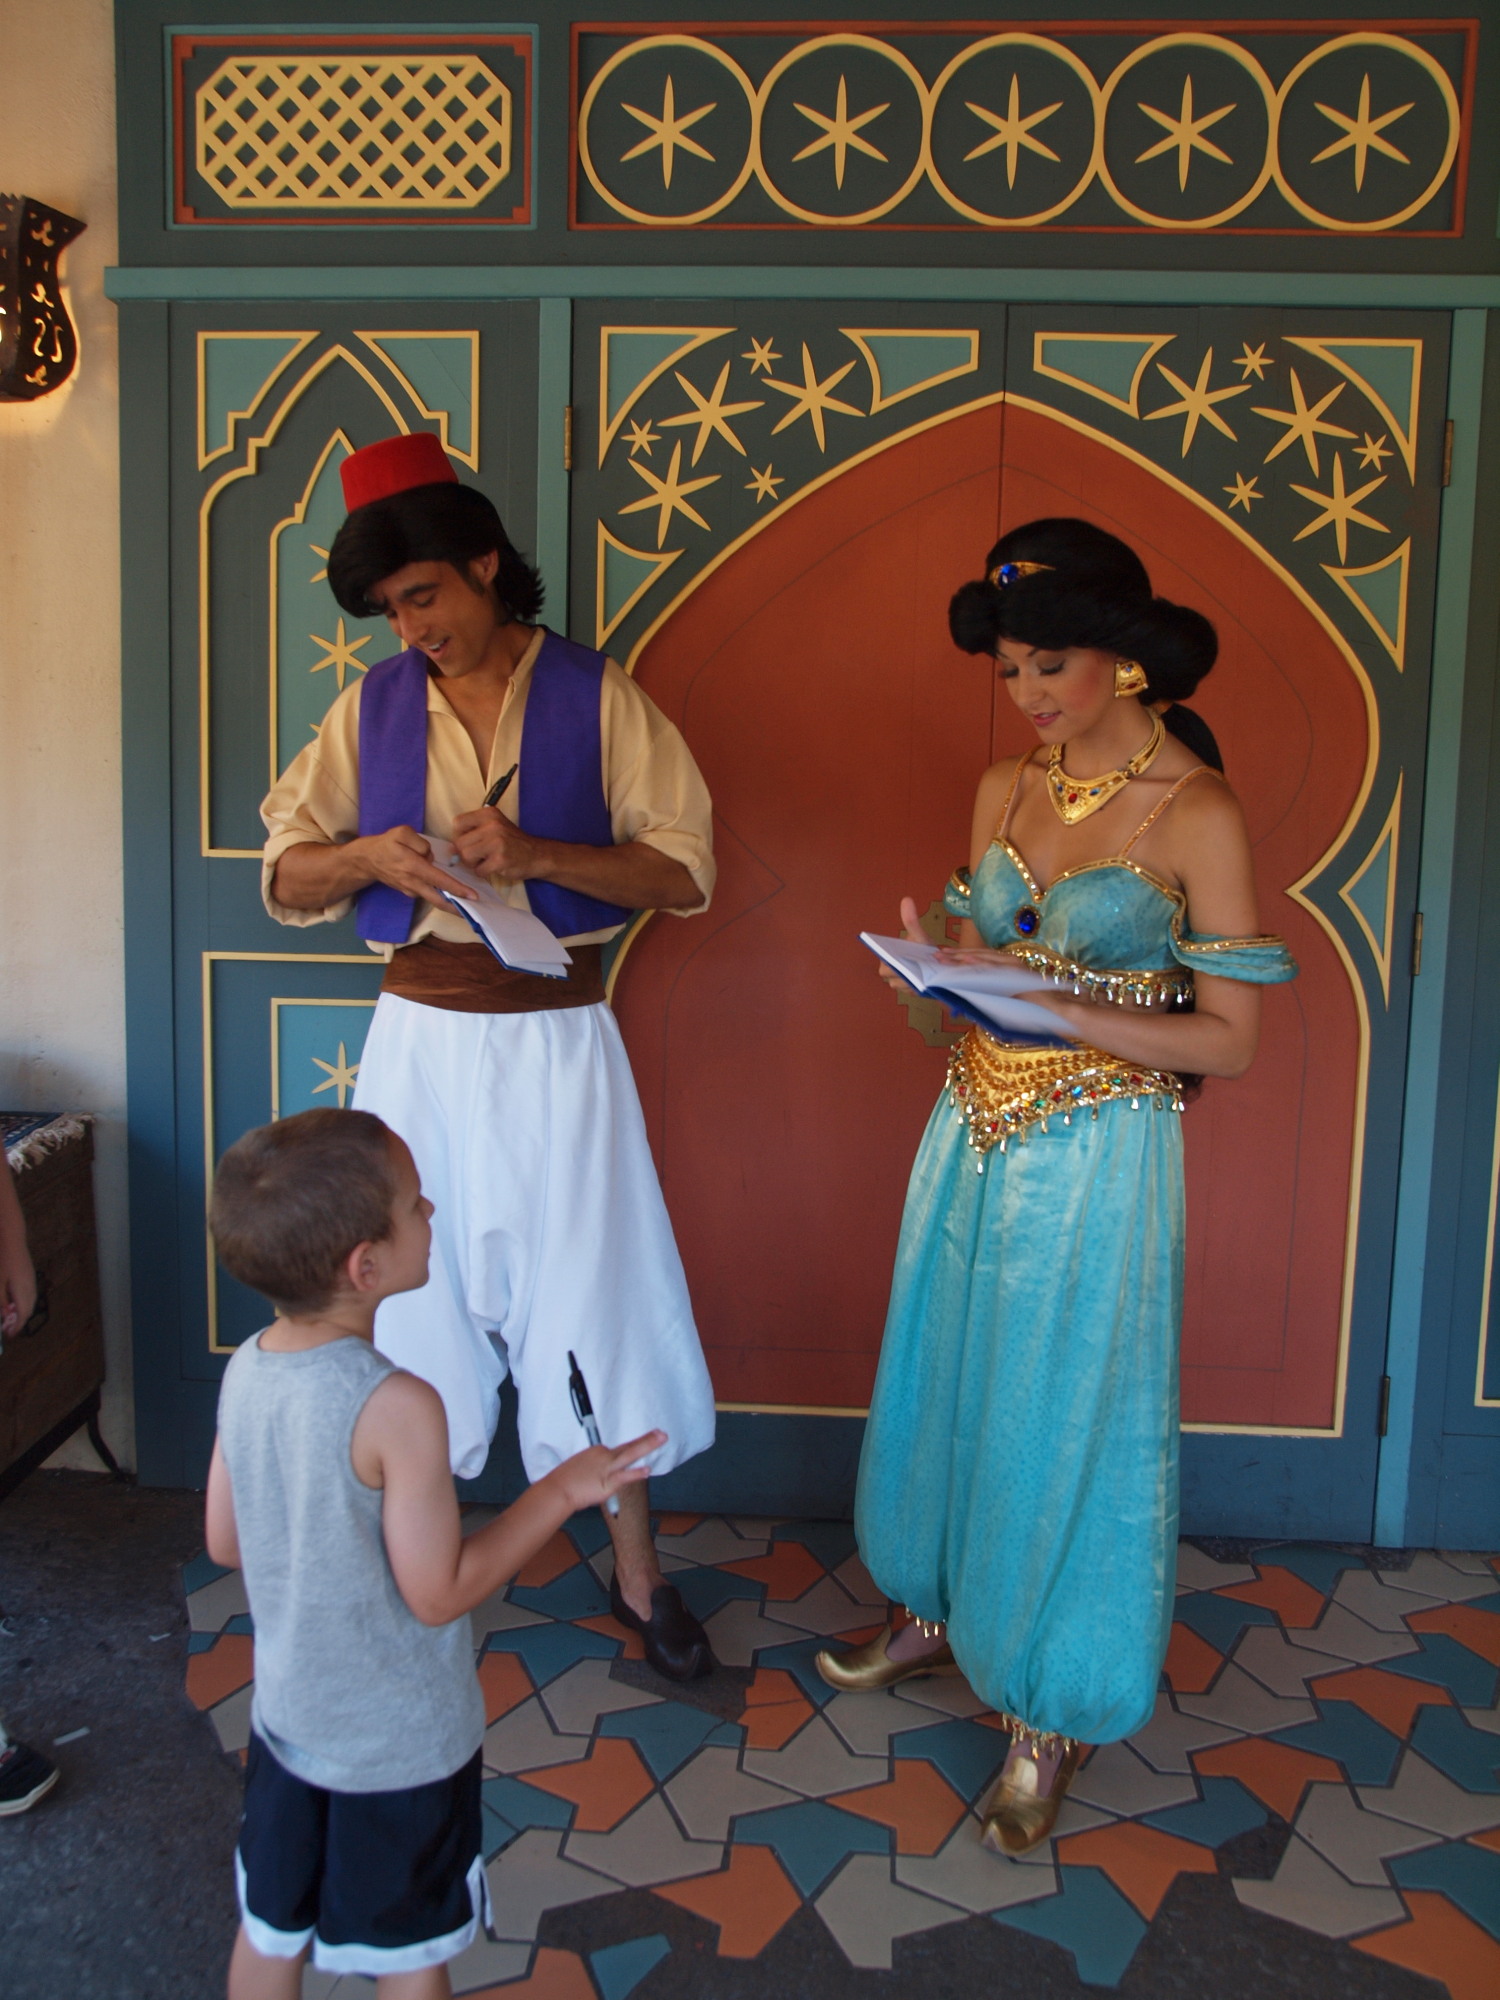 Adventureland - Aladdin and Jasmine